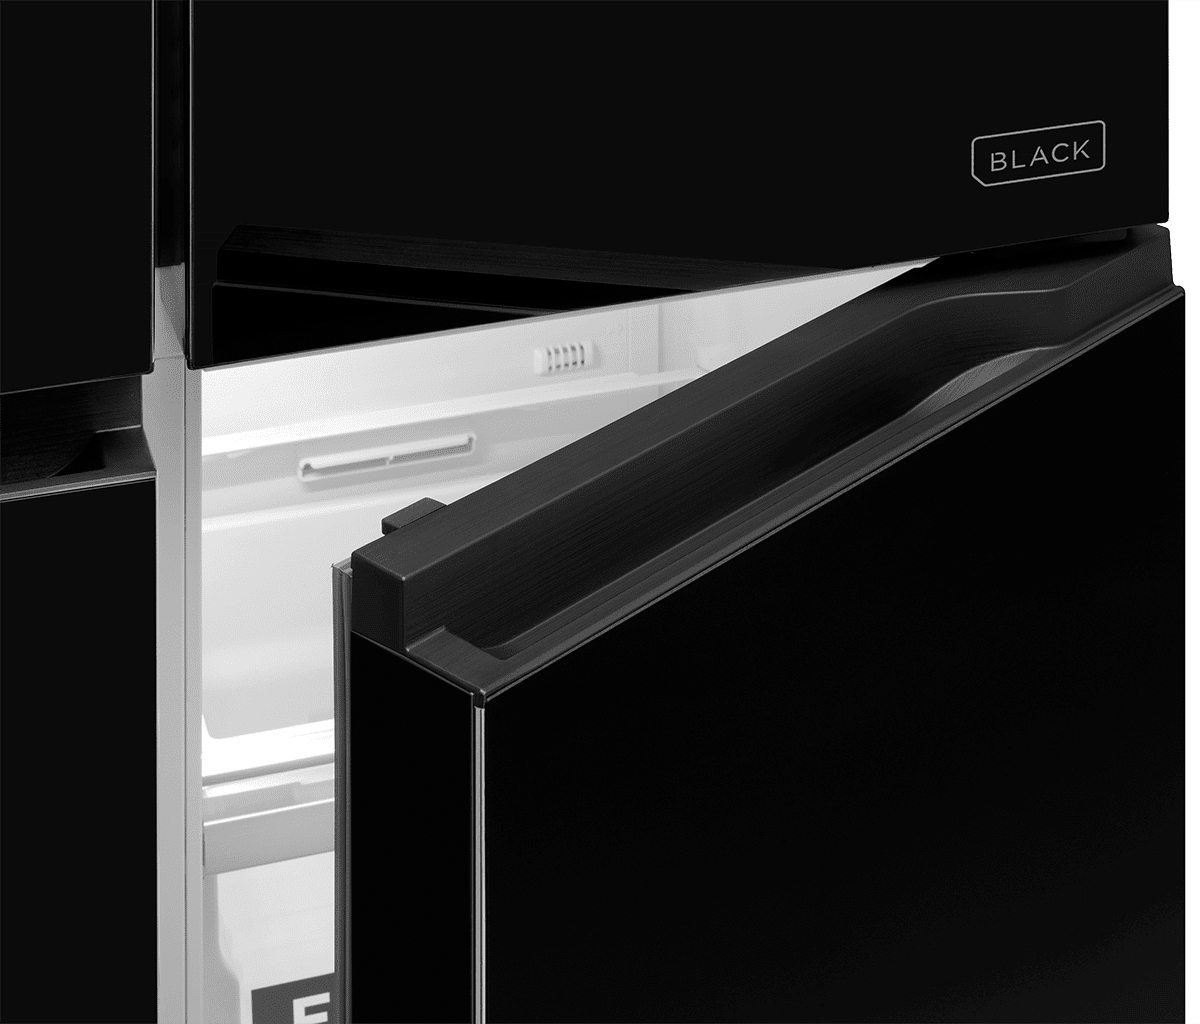 Холодильник Concept LA8383bc BLACK характеристики - фотографія 7